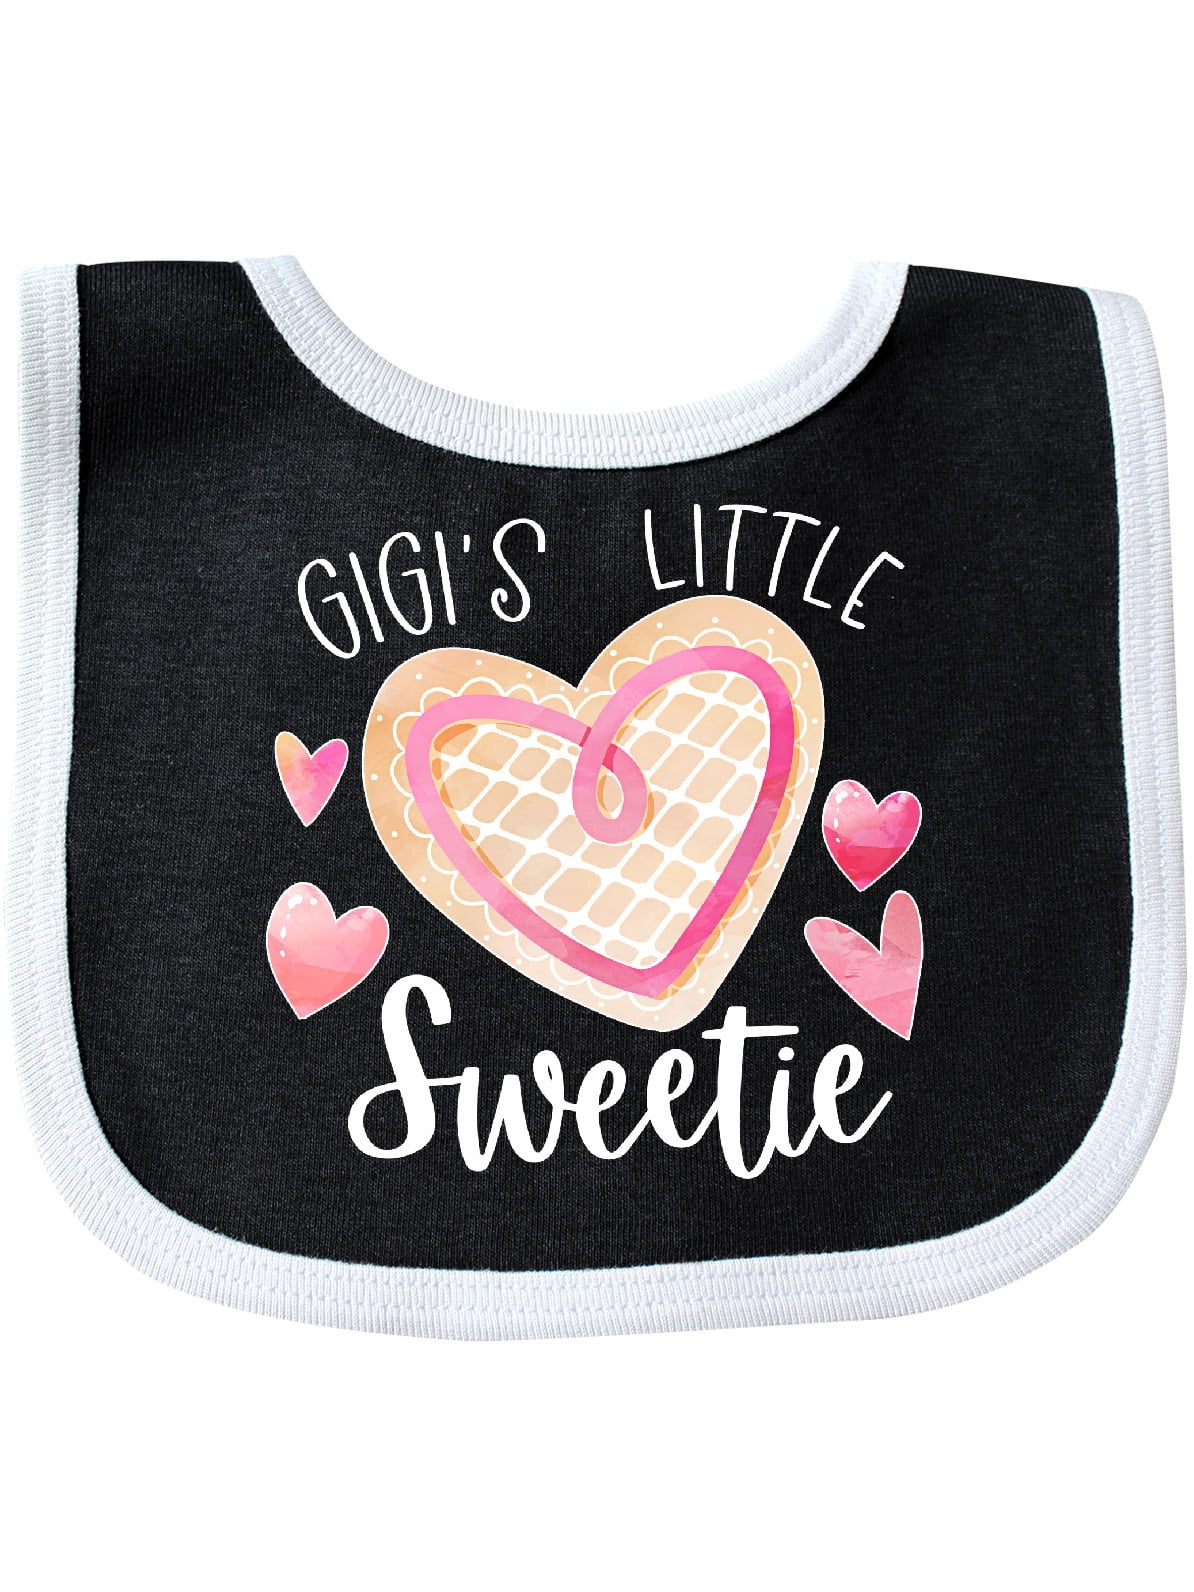 Gigi's Little Sweetie with Pink Heart Cookie Baby Bib - Walmart.com ...